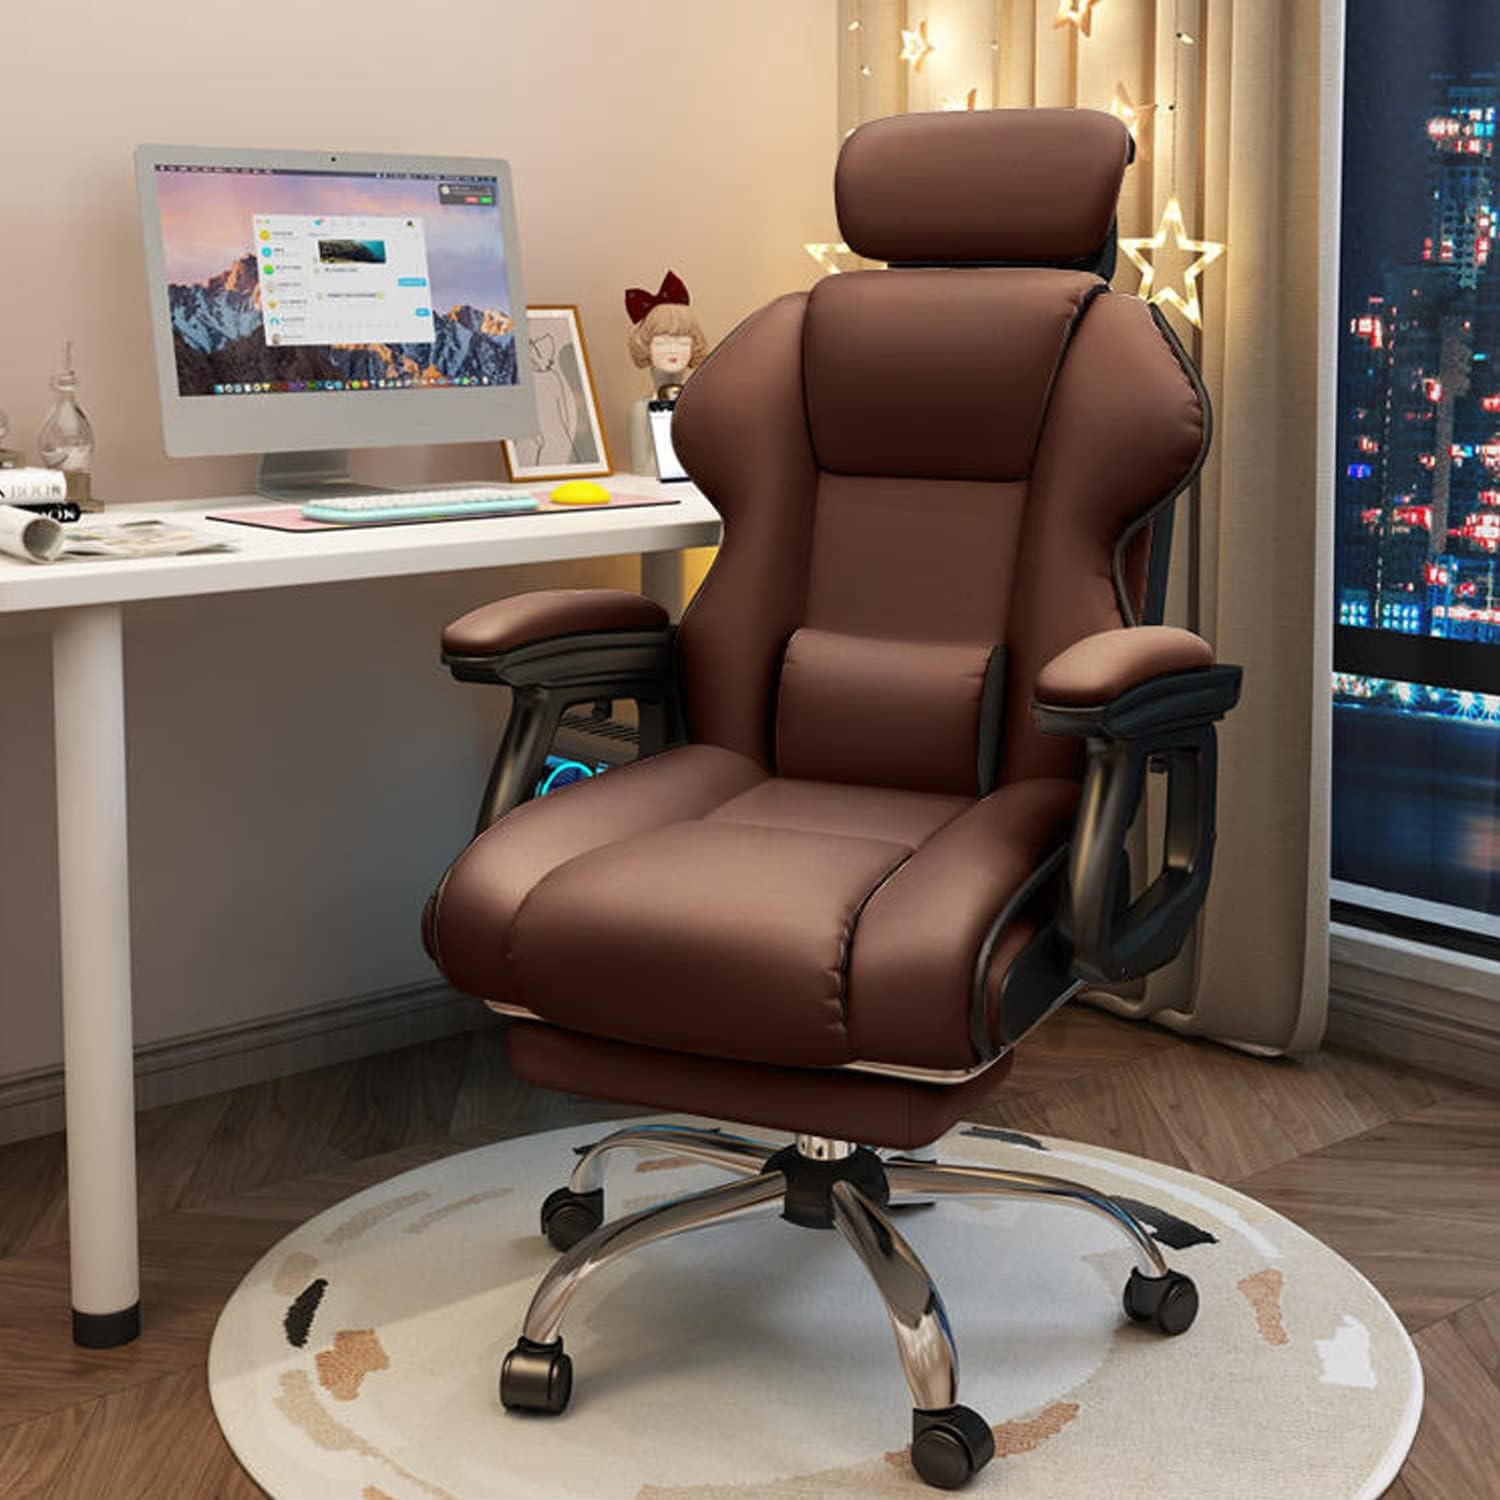 社長椅子 ゲーミングチェア デスクチェア 360度回転昇降機能 リクライニングチェア 肉厚座面 事務椅子 ブラック ハイバック 人間工学 在宅ワーク  勉強 仕事